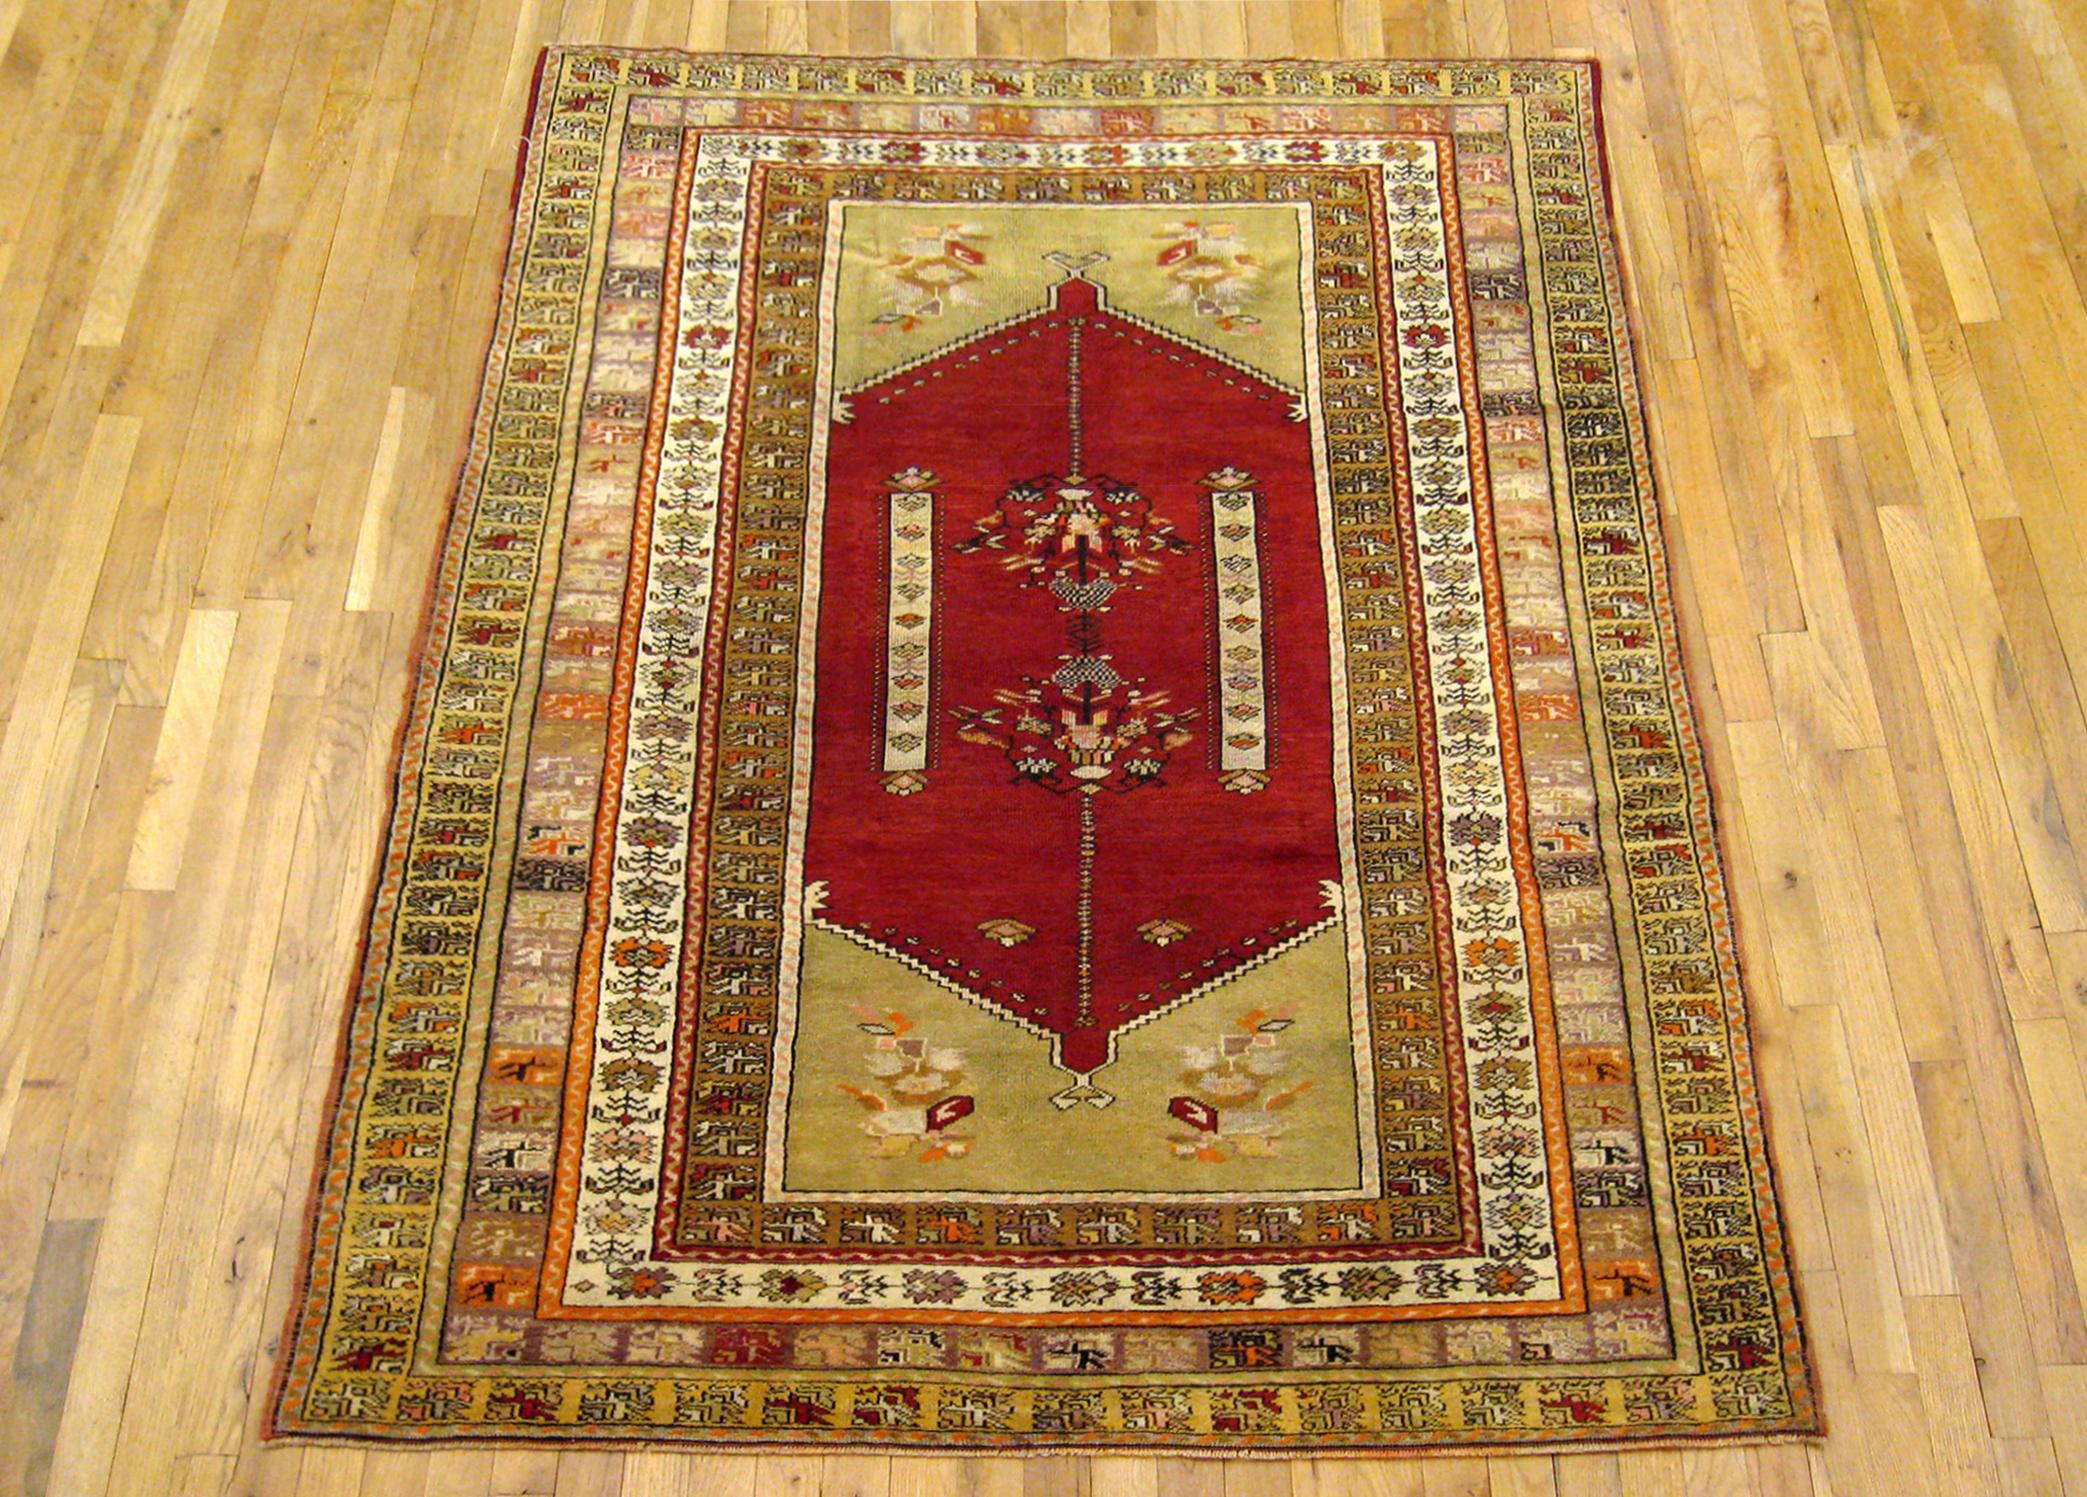 Antiker türkischer Sivas-Teppich, kleines Format, um 1920

Ein einzigartiger antiker türkischer Sivas-Oriental-Teppich, handgeknüpft mit weichem Wollflor. Dieser wunderschöne Teppich zeigt ein zartes Medaillon in der Mitte mit einem Endmotiv auf